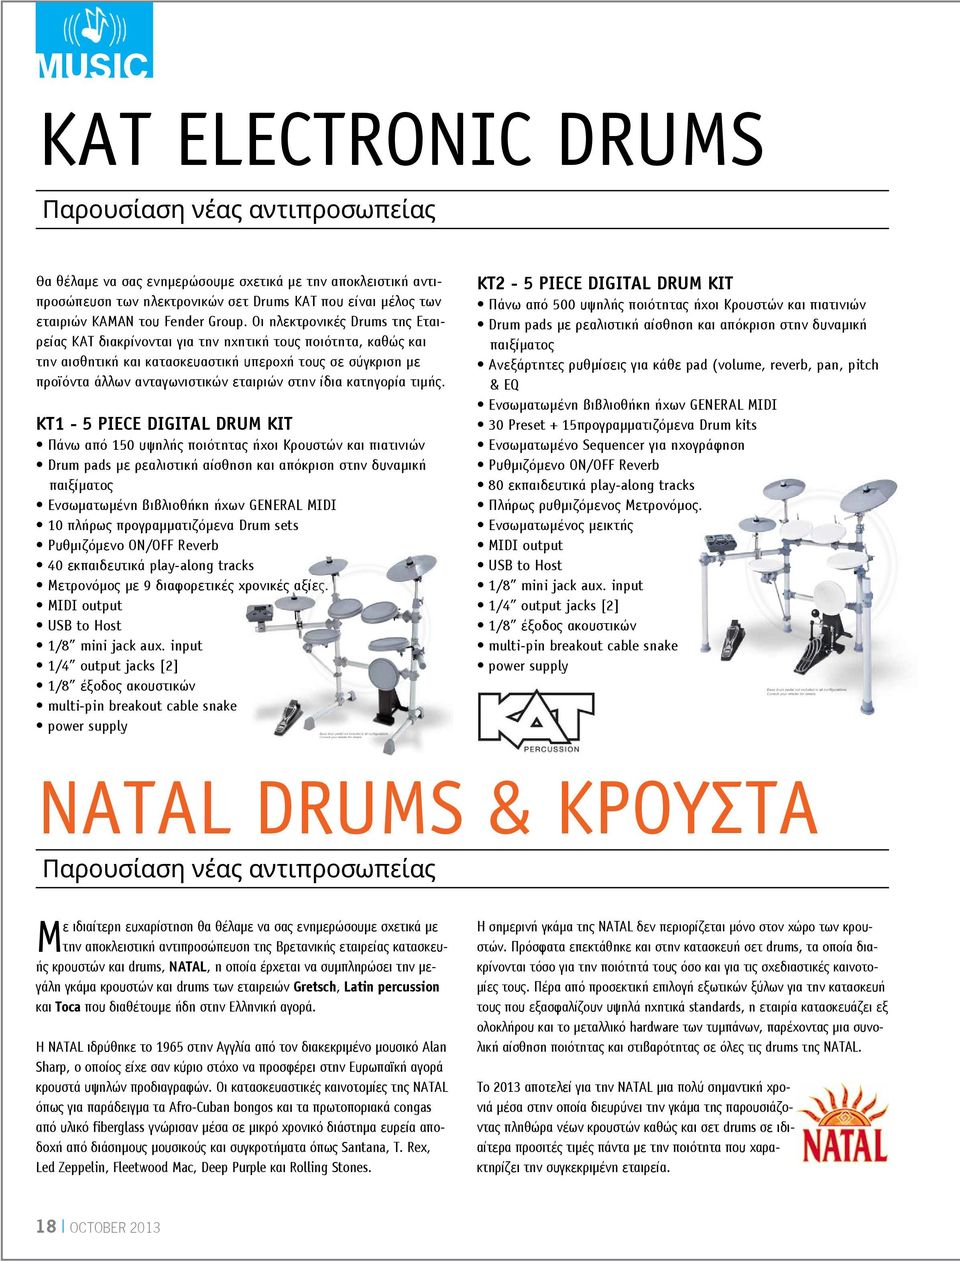 Οι ηλεκτρονικές Drums της Εταιρείας ΚΑΤ διακρίνονται για την ηχητική τους ποιότητα, καθώς και την αισθητική και κατασκευαστική υπεροχή τους σε σύγκριση με προϊόντα άλλων ανταγωνιστικών εταιριών στην